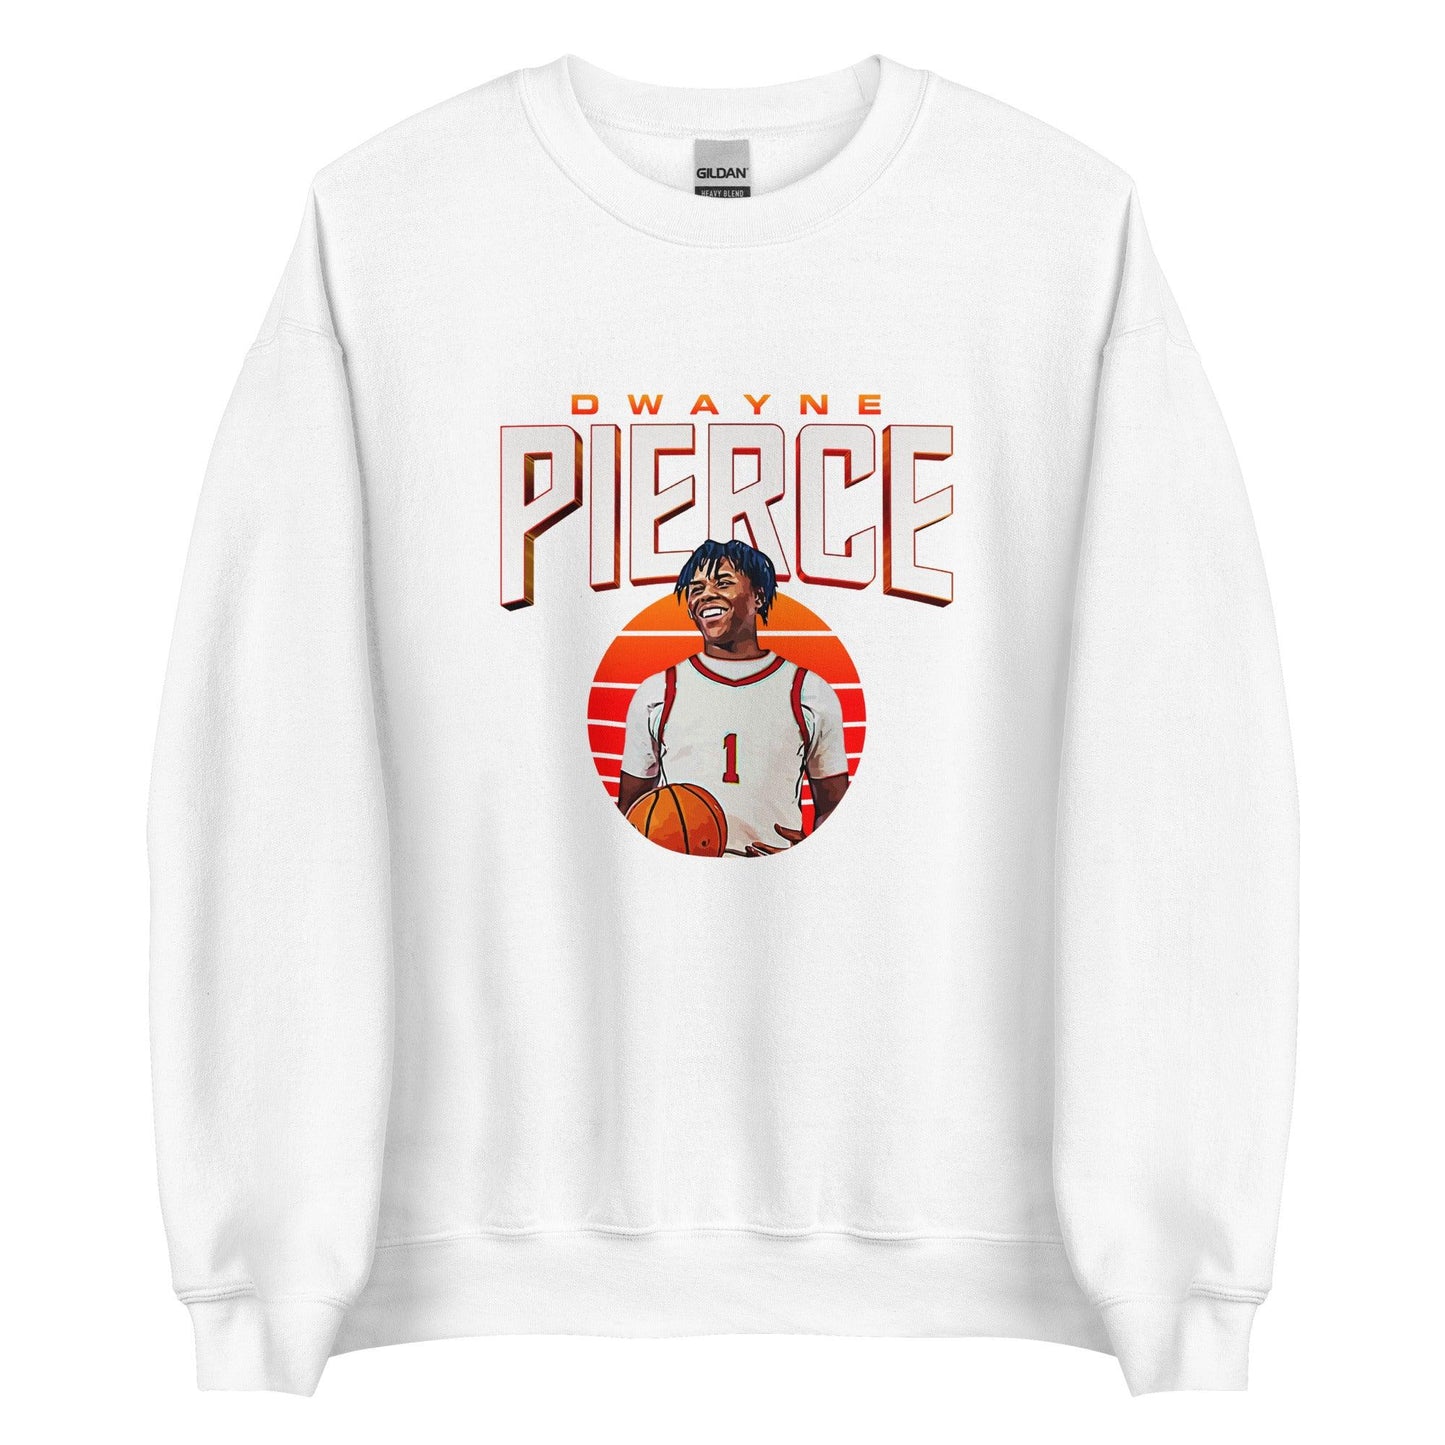 Dwayne Pierce "Gameday" Sweatshirt - Fan Arch